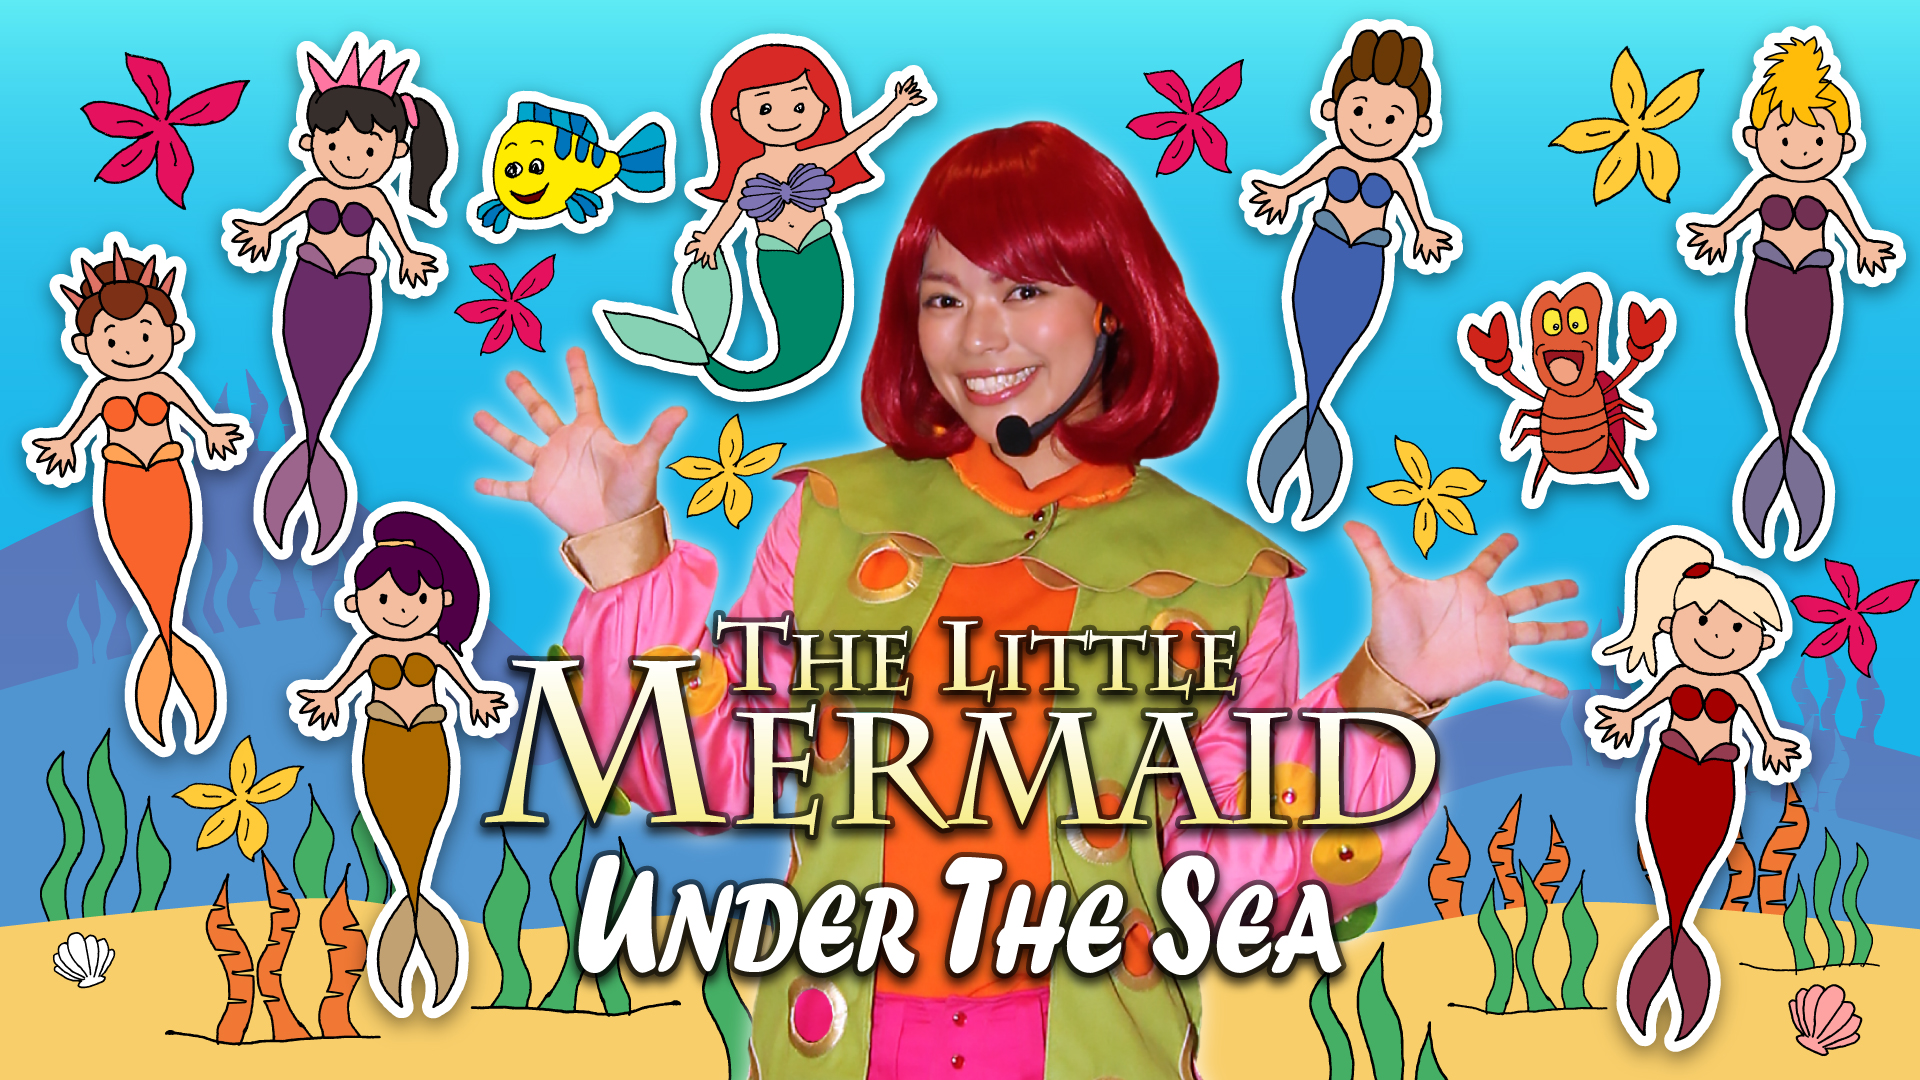 Under the Sea (The Little Mermaid) Lyrics - アンダー・ザ・シー リトル・マーメイド 歌ってみた